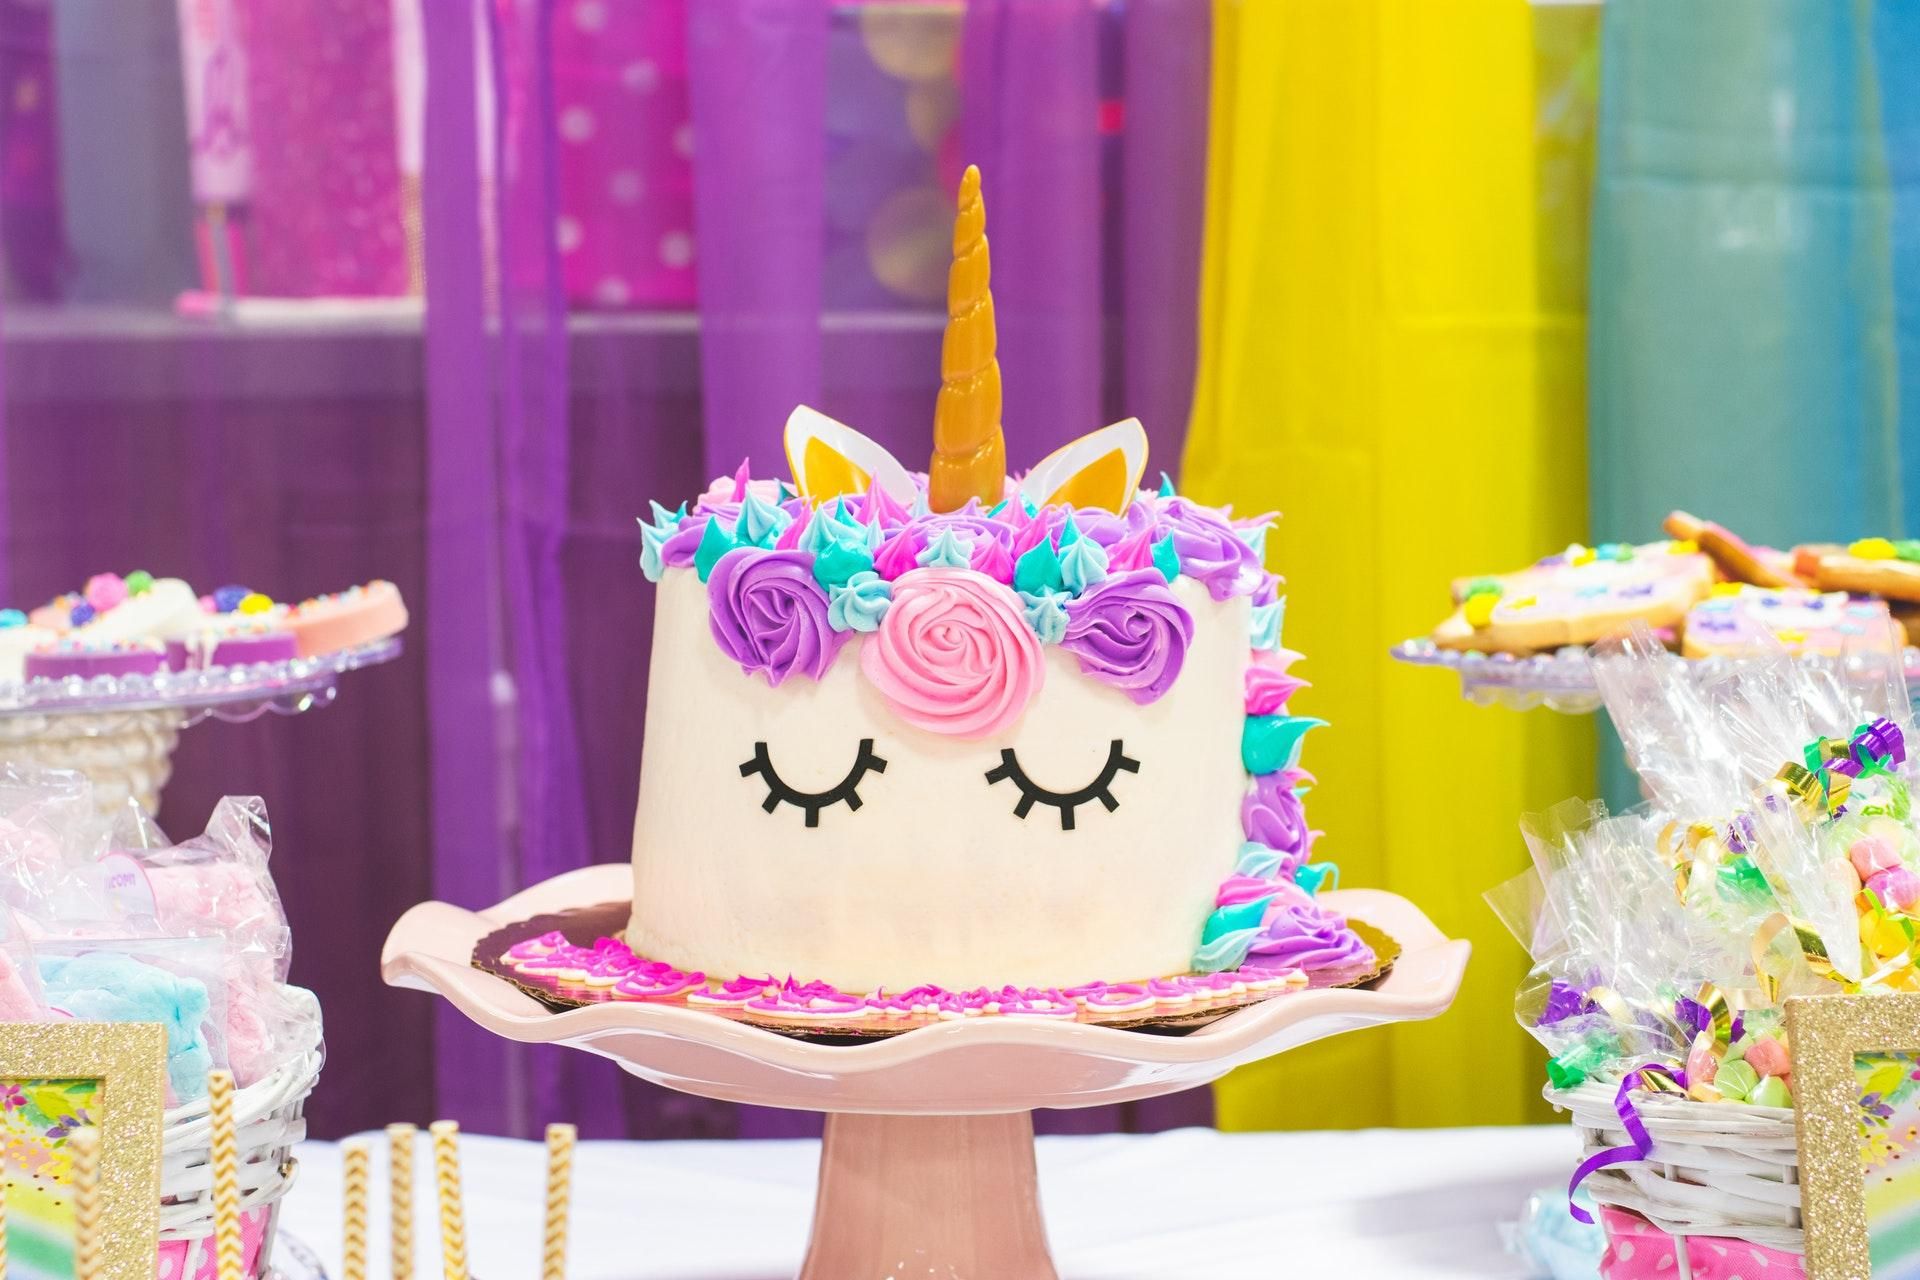 Идеи оформления торта на детский день рождения: изображения